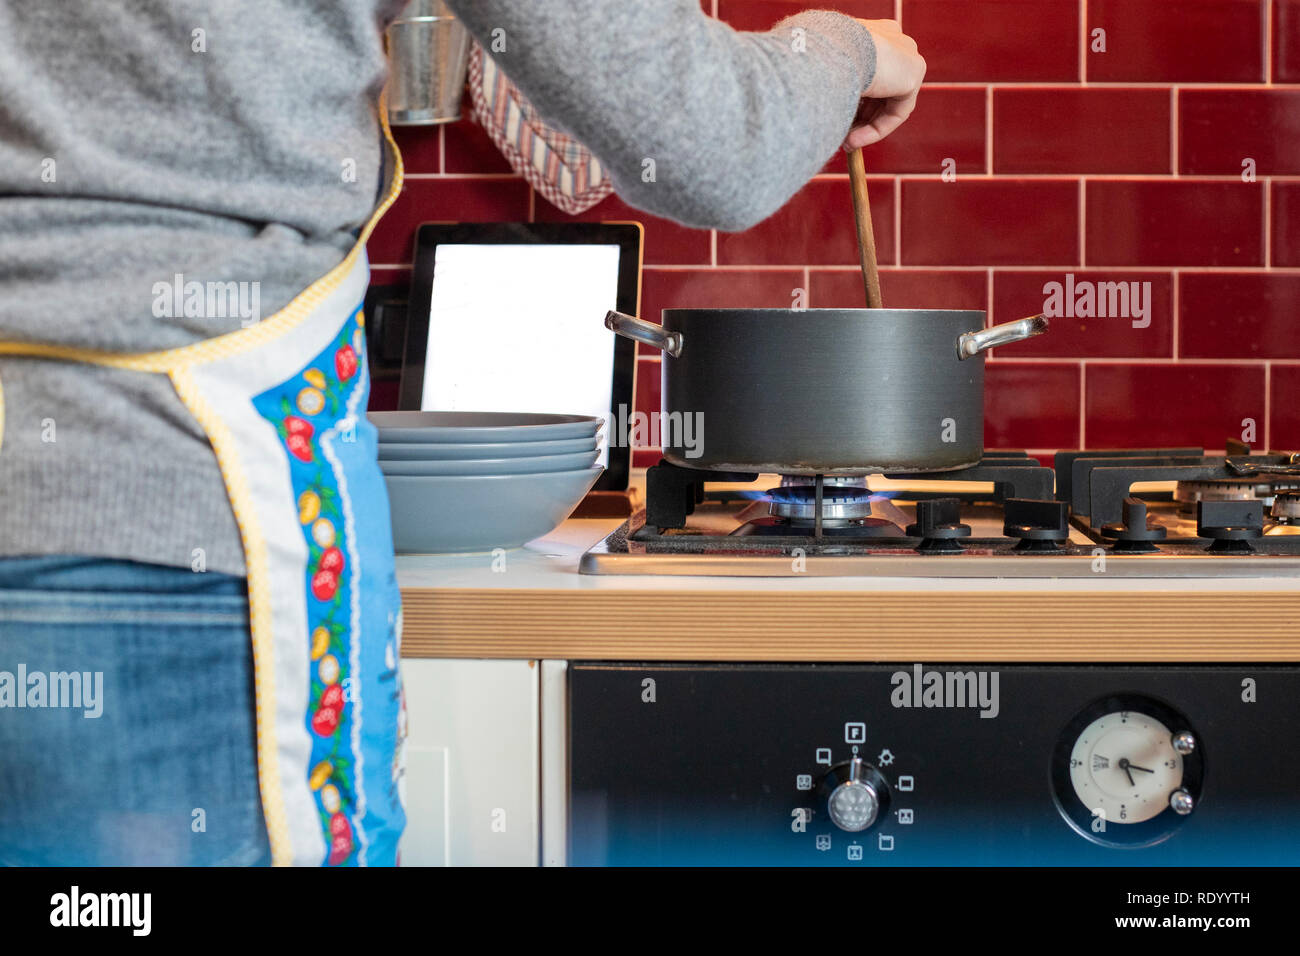 Femme avec tablier bleu, visage non visible, la cuisson dans un pot gris, d'une cuisine classique rouge, lors de la lecture de fiche sur tablette Banque D'Images